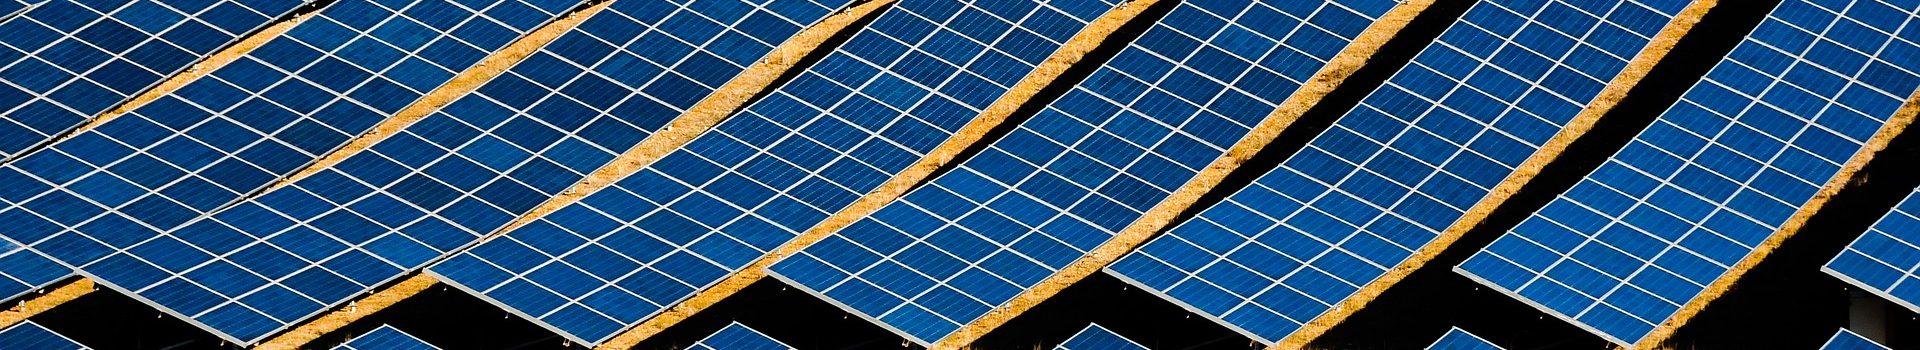 Photovoltaik ist die günstigste alternative Energieform